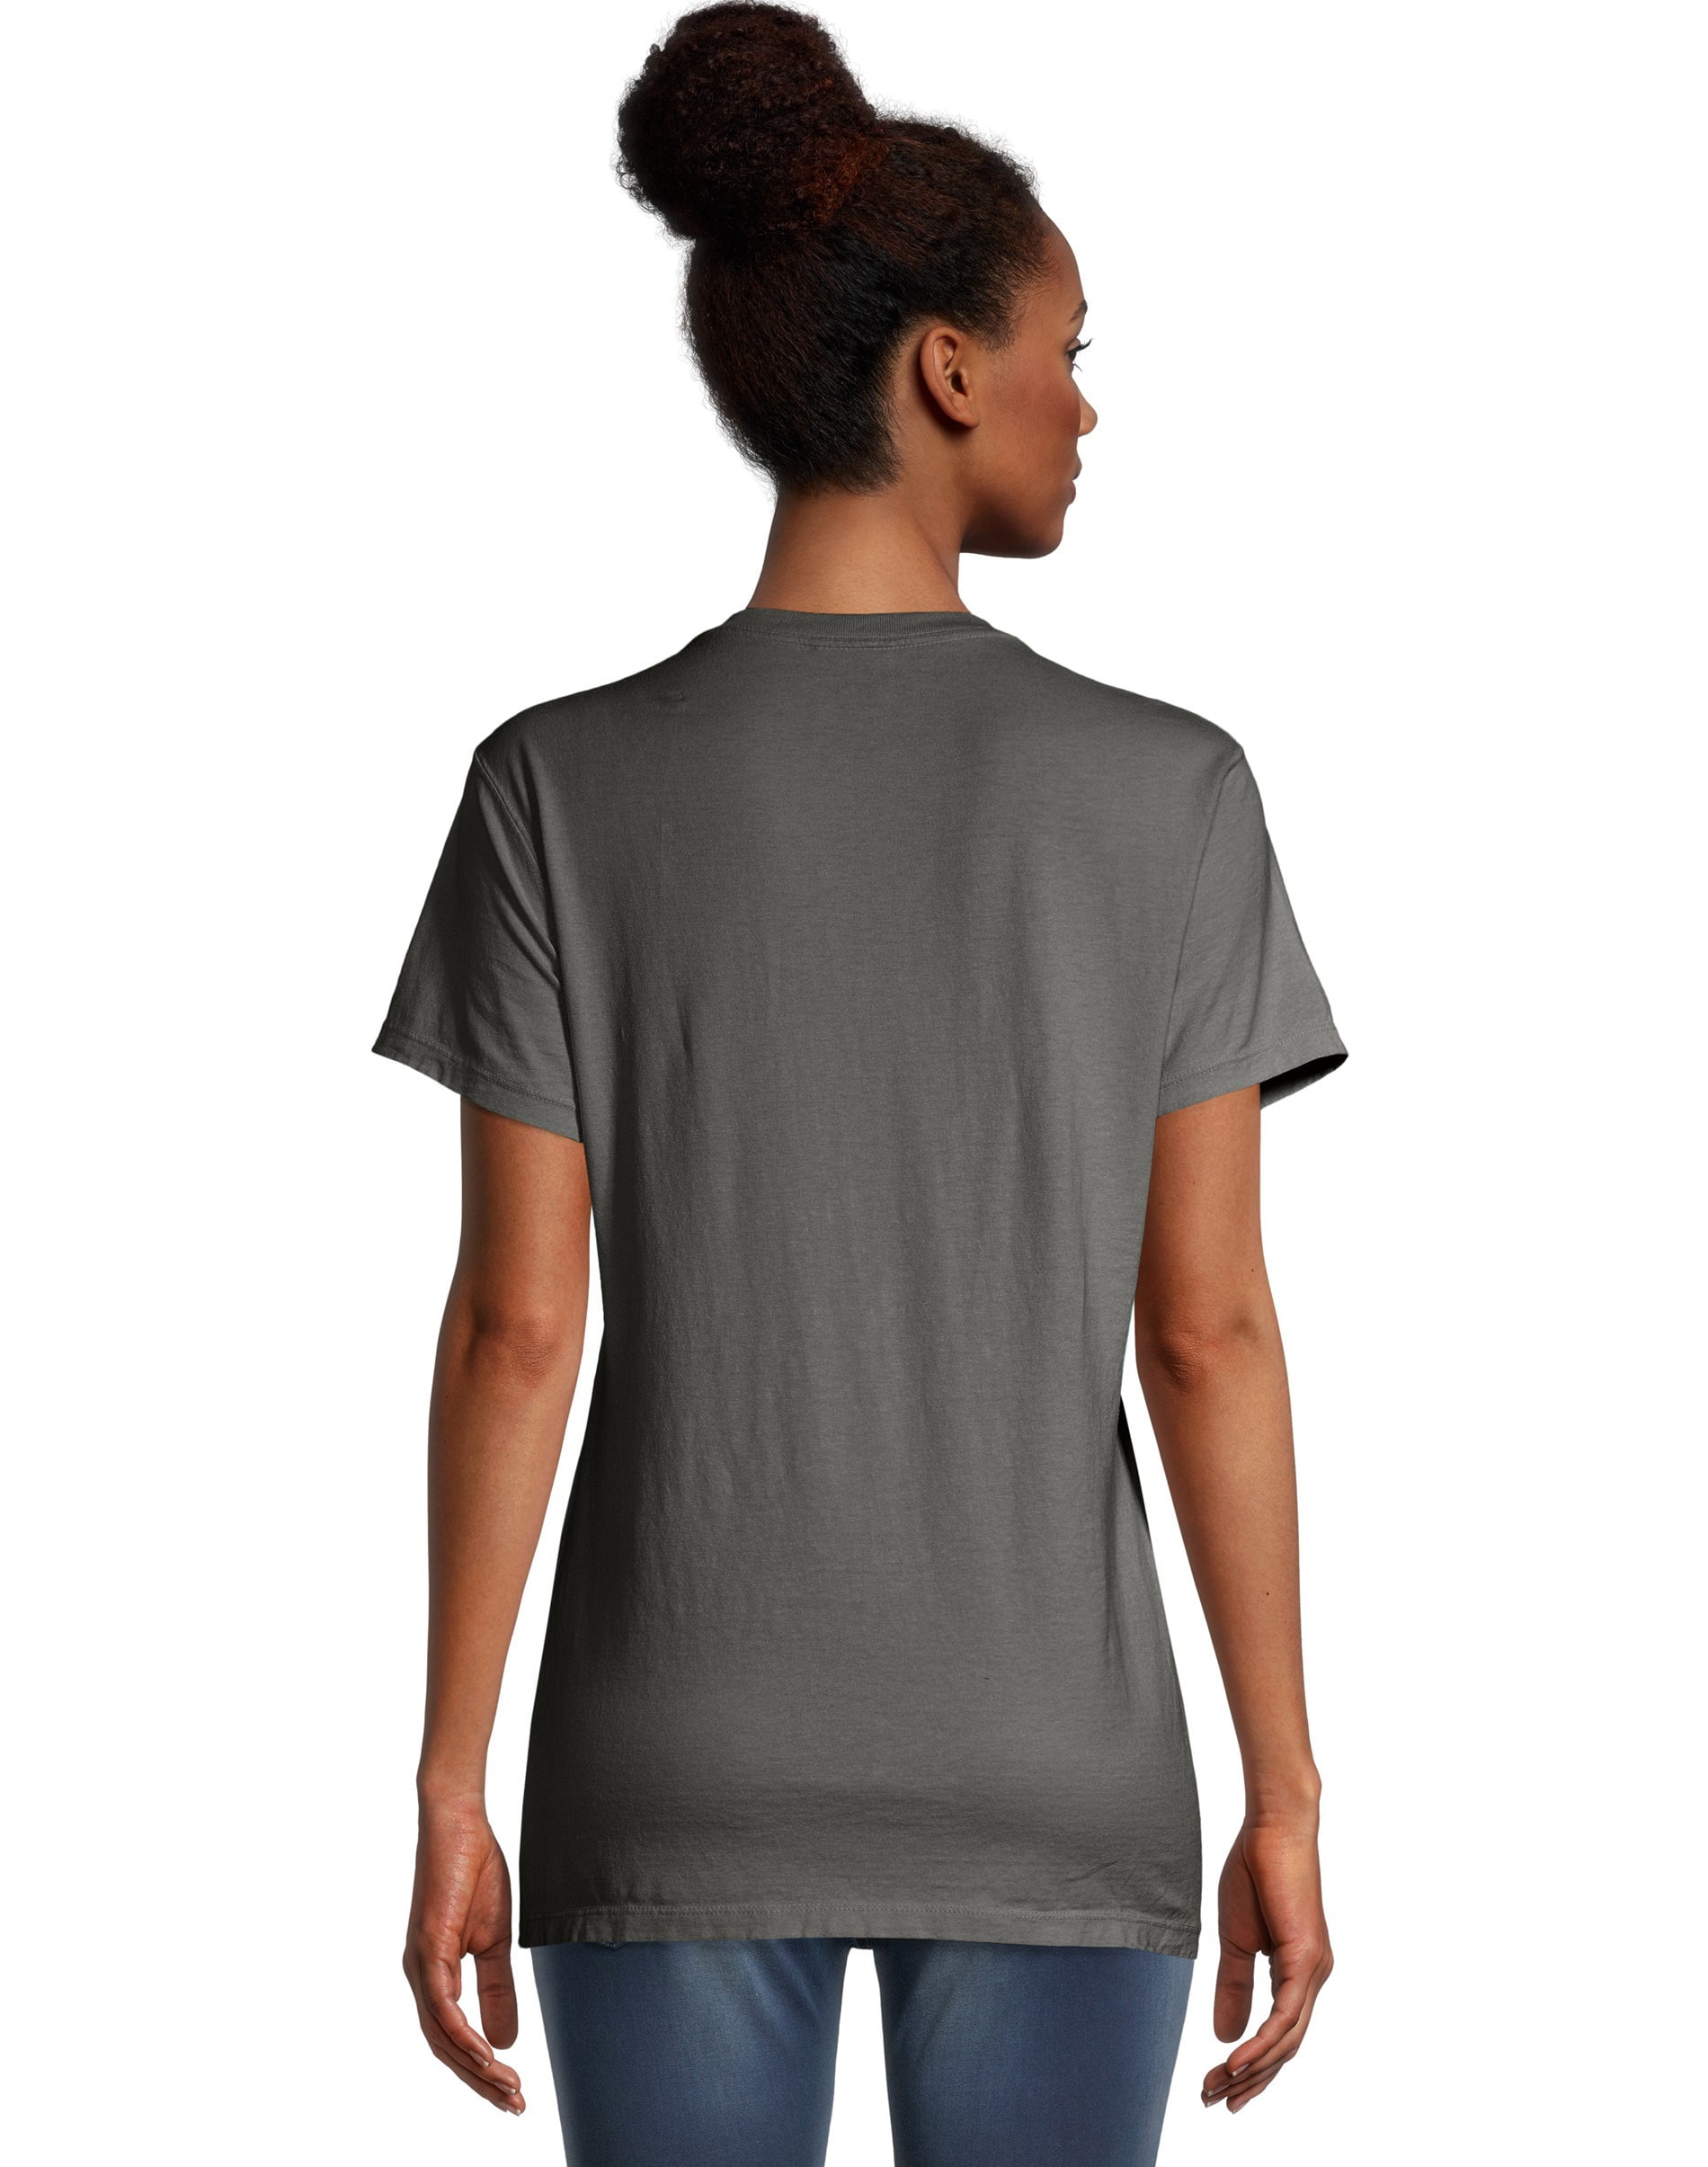 Hanes Women's Garment Dyed V-Neck T-Shirt